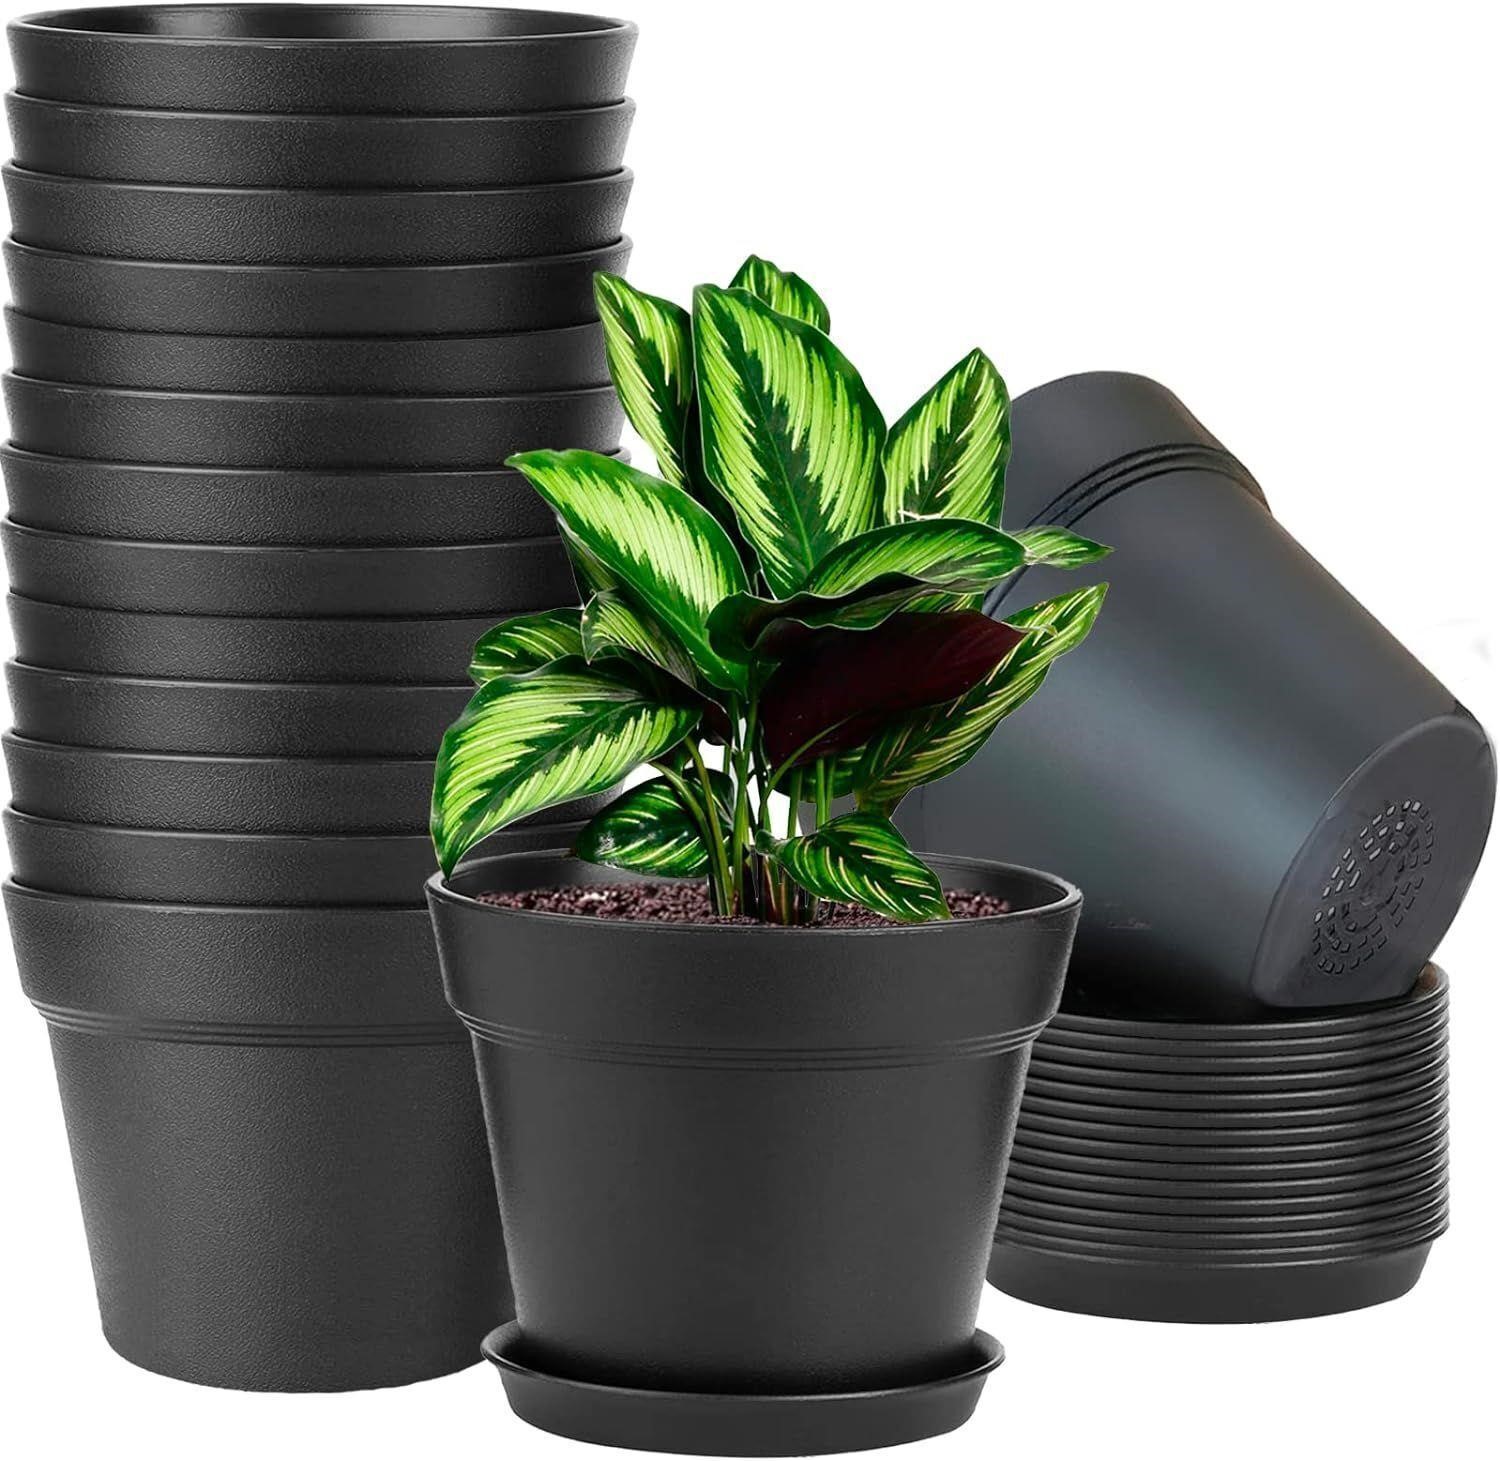 Plastic Planters for Indoor Flower Pots